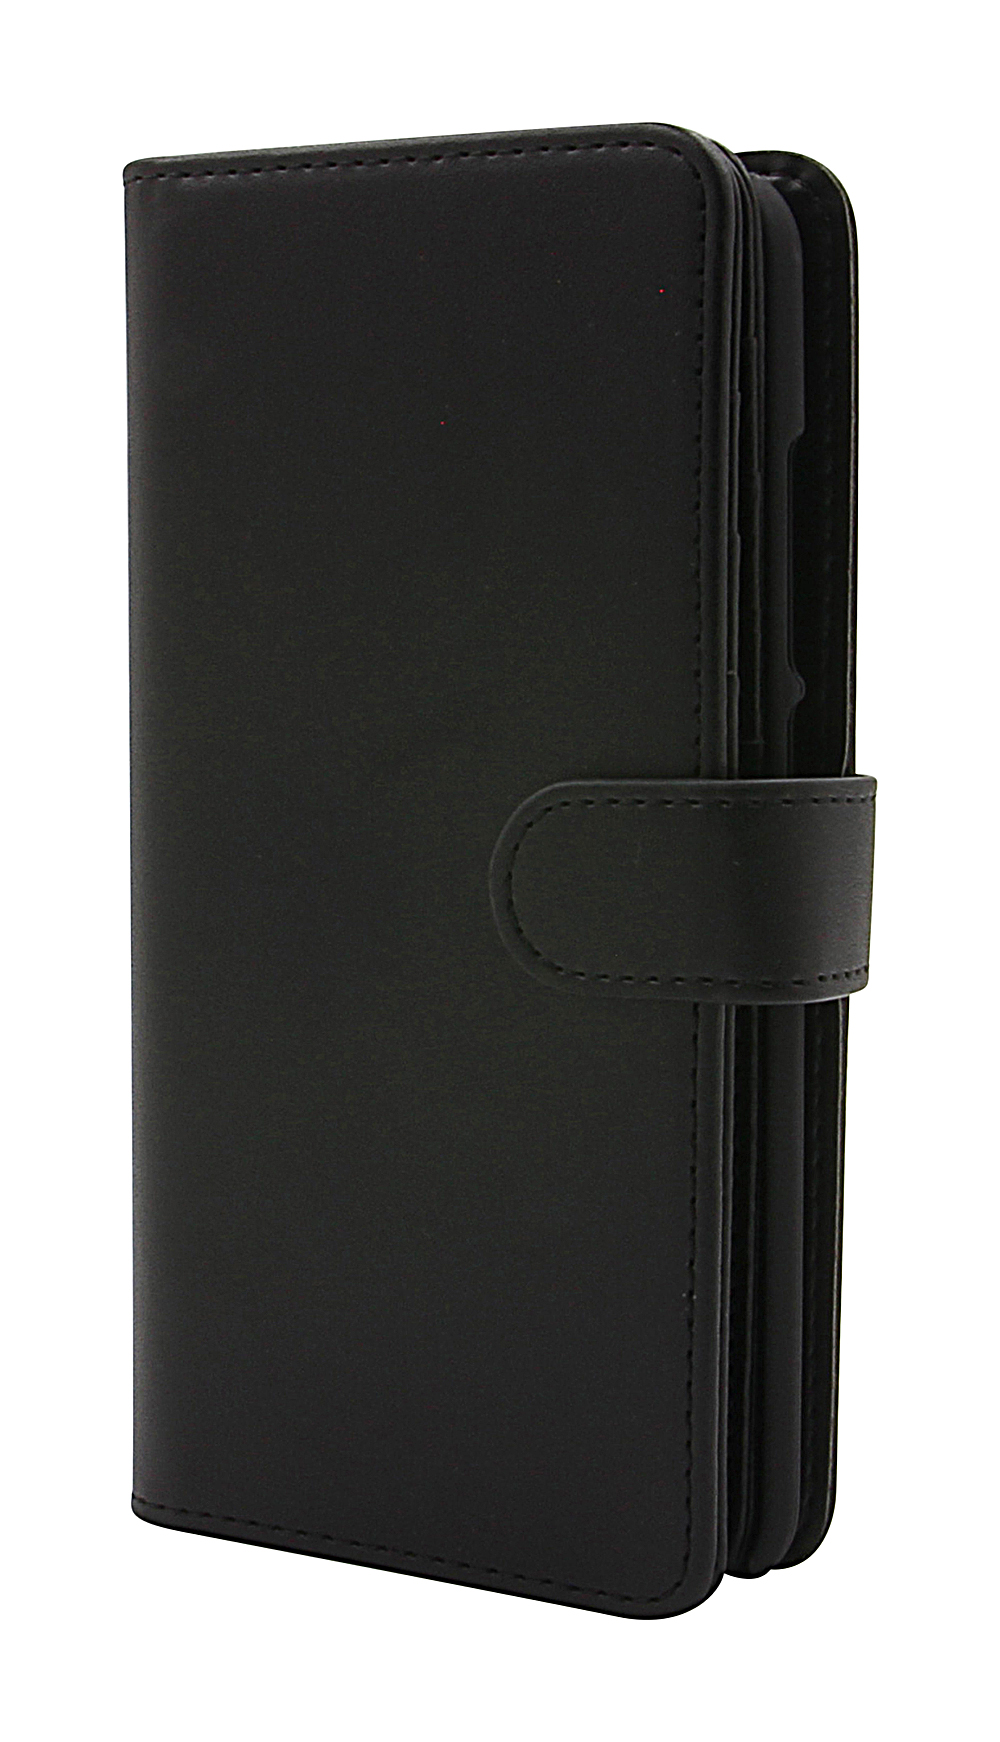 CoverInSkimblocker XL Magnet Fodral Xiaomi Mi A2